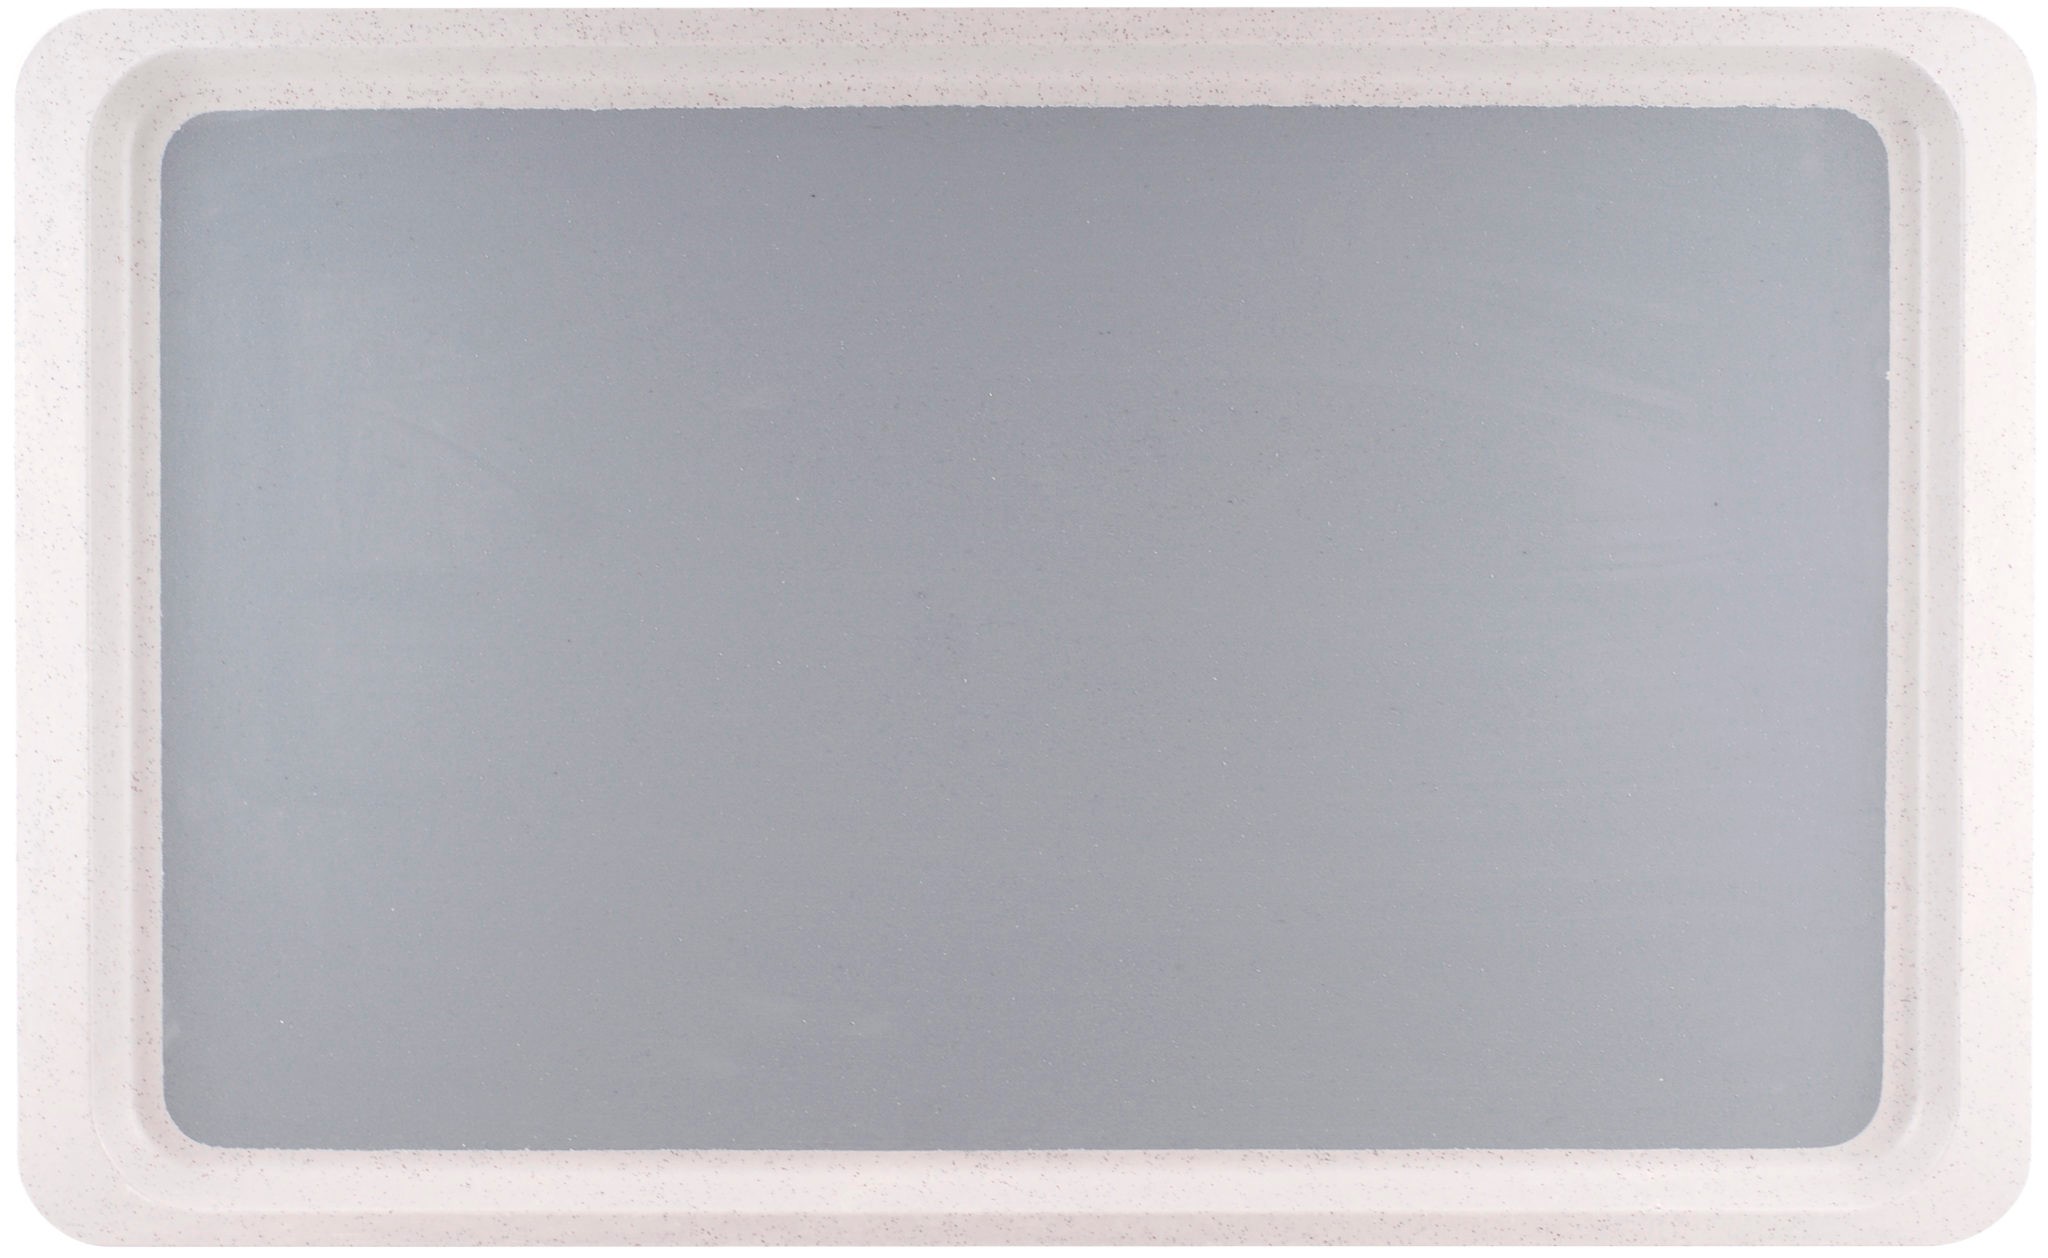 Roltex CLASSIC GN 1/2 Tablett aus Polyester Maße: 32,5 x 26,5cm, Farbe: grau